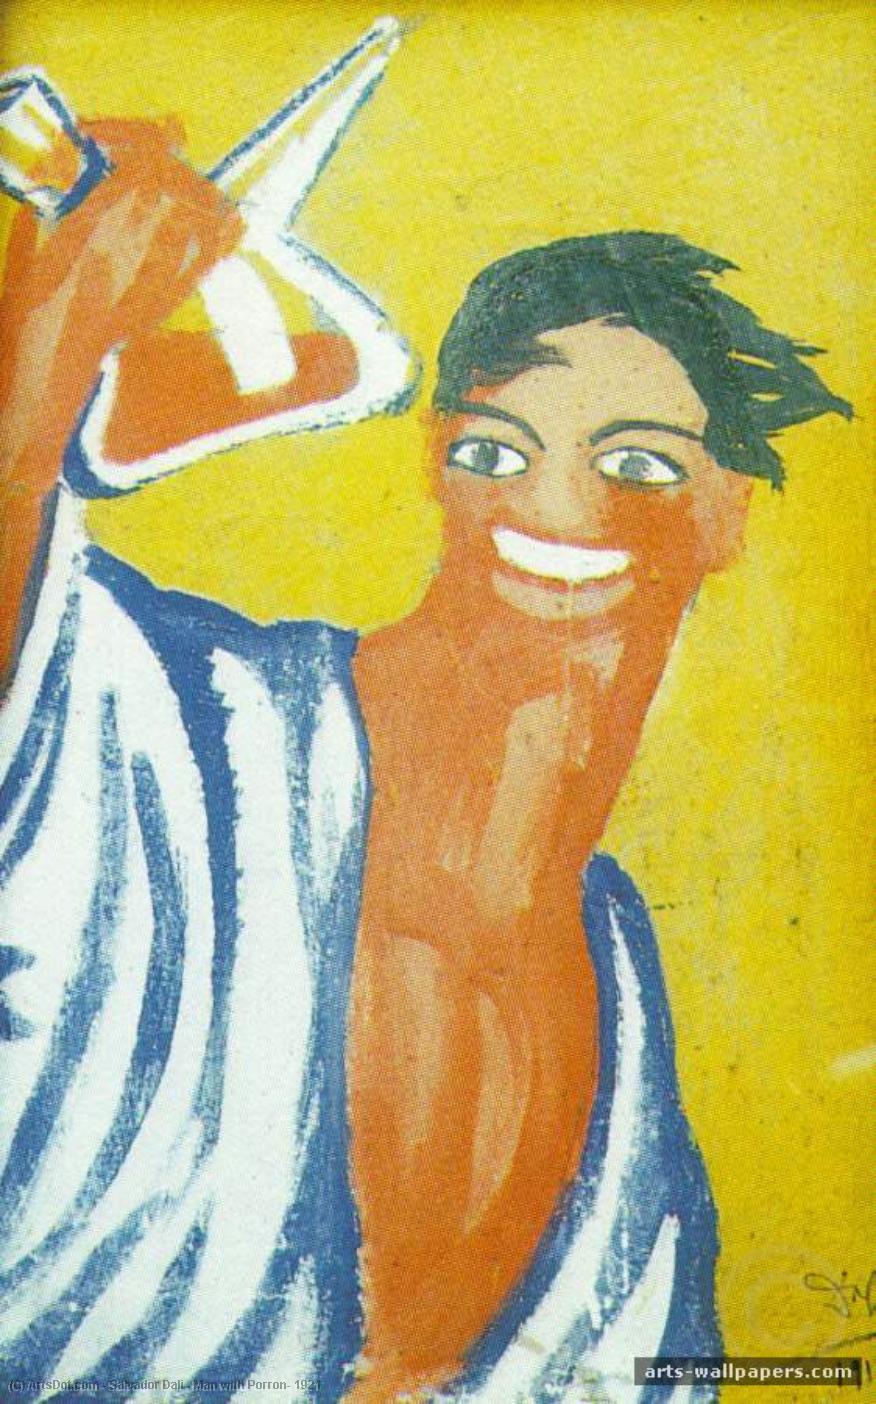 WikiOO.org - Εγκυκλοπαίδεια Καλών Τεχνών - Ζωγραφική, έργα τέχνης Salvador Dali - Man with Porron, 1921